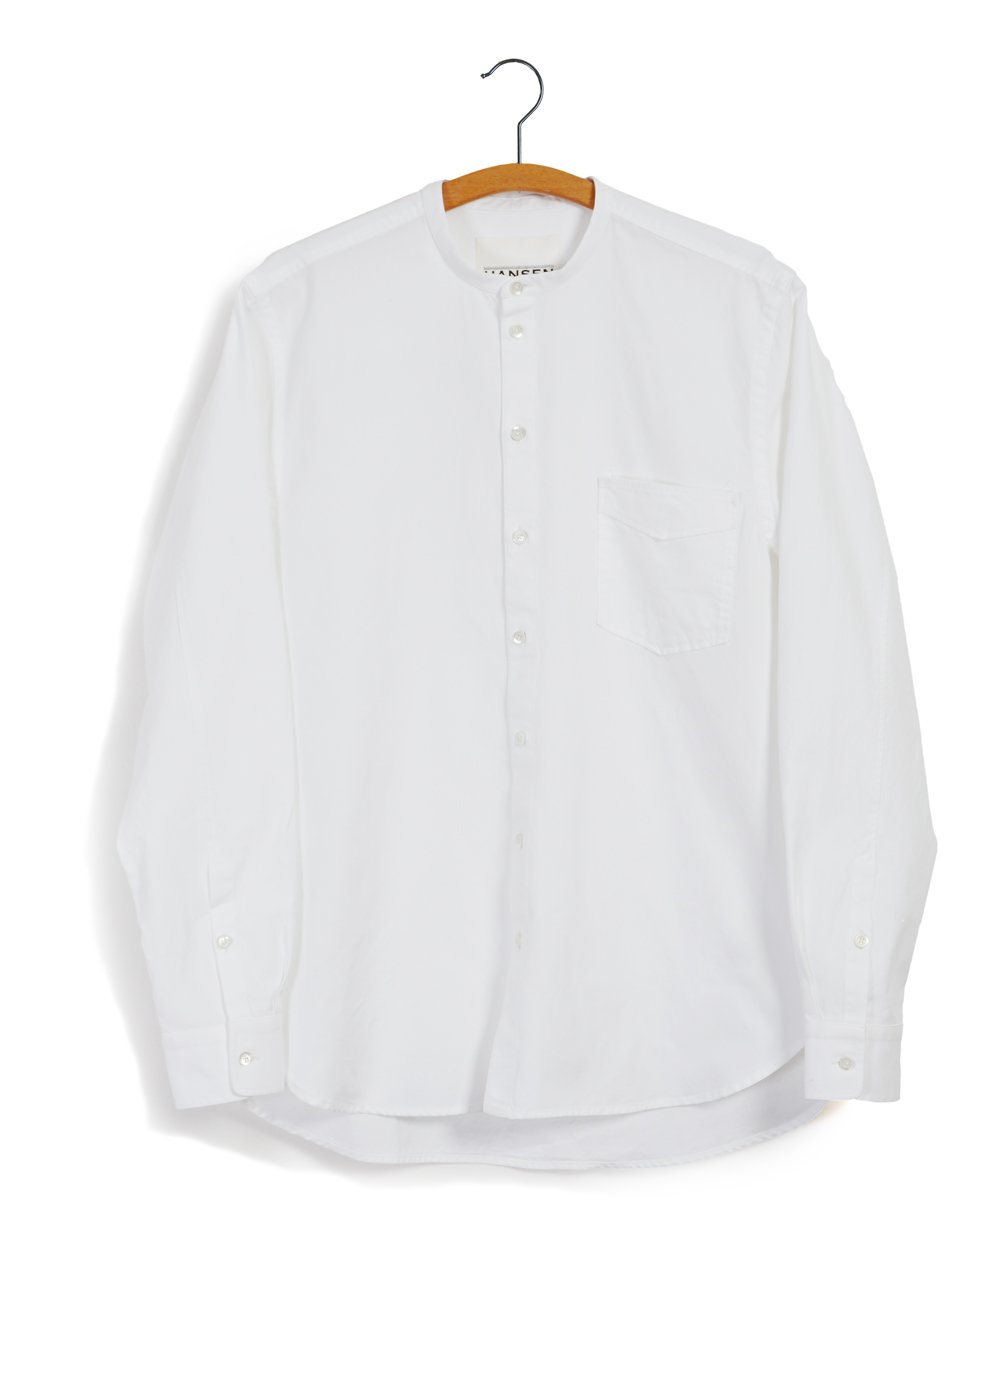 HANSEN Garments - ANTE | Collarless Shirt | White - HANSEN Garments